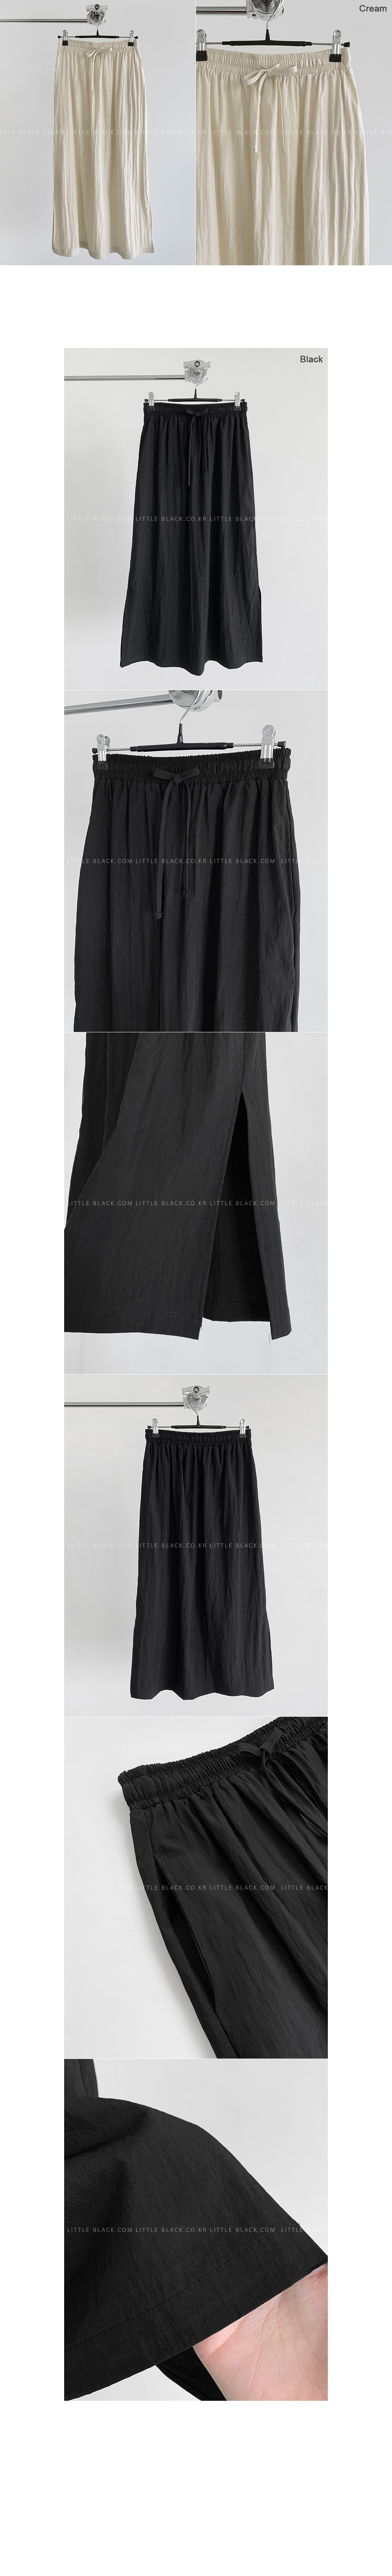 Cinchable Waist Maxi Skirt|